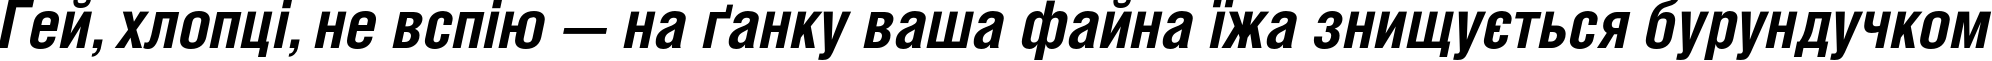 Пример написания шрифтом HeliosCond Bold Italic текста на украинском